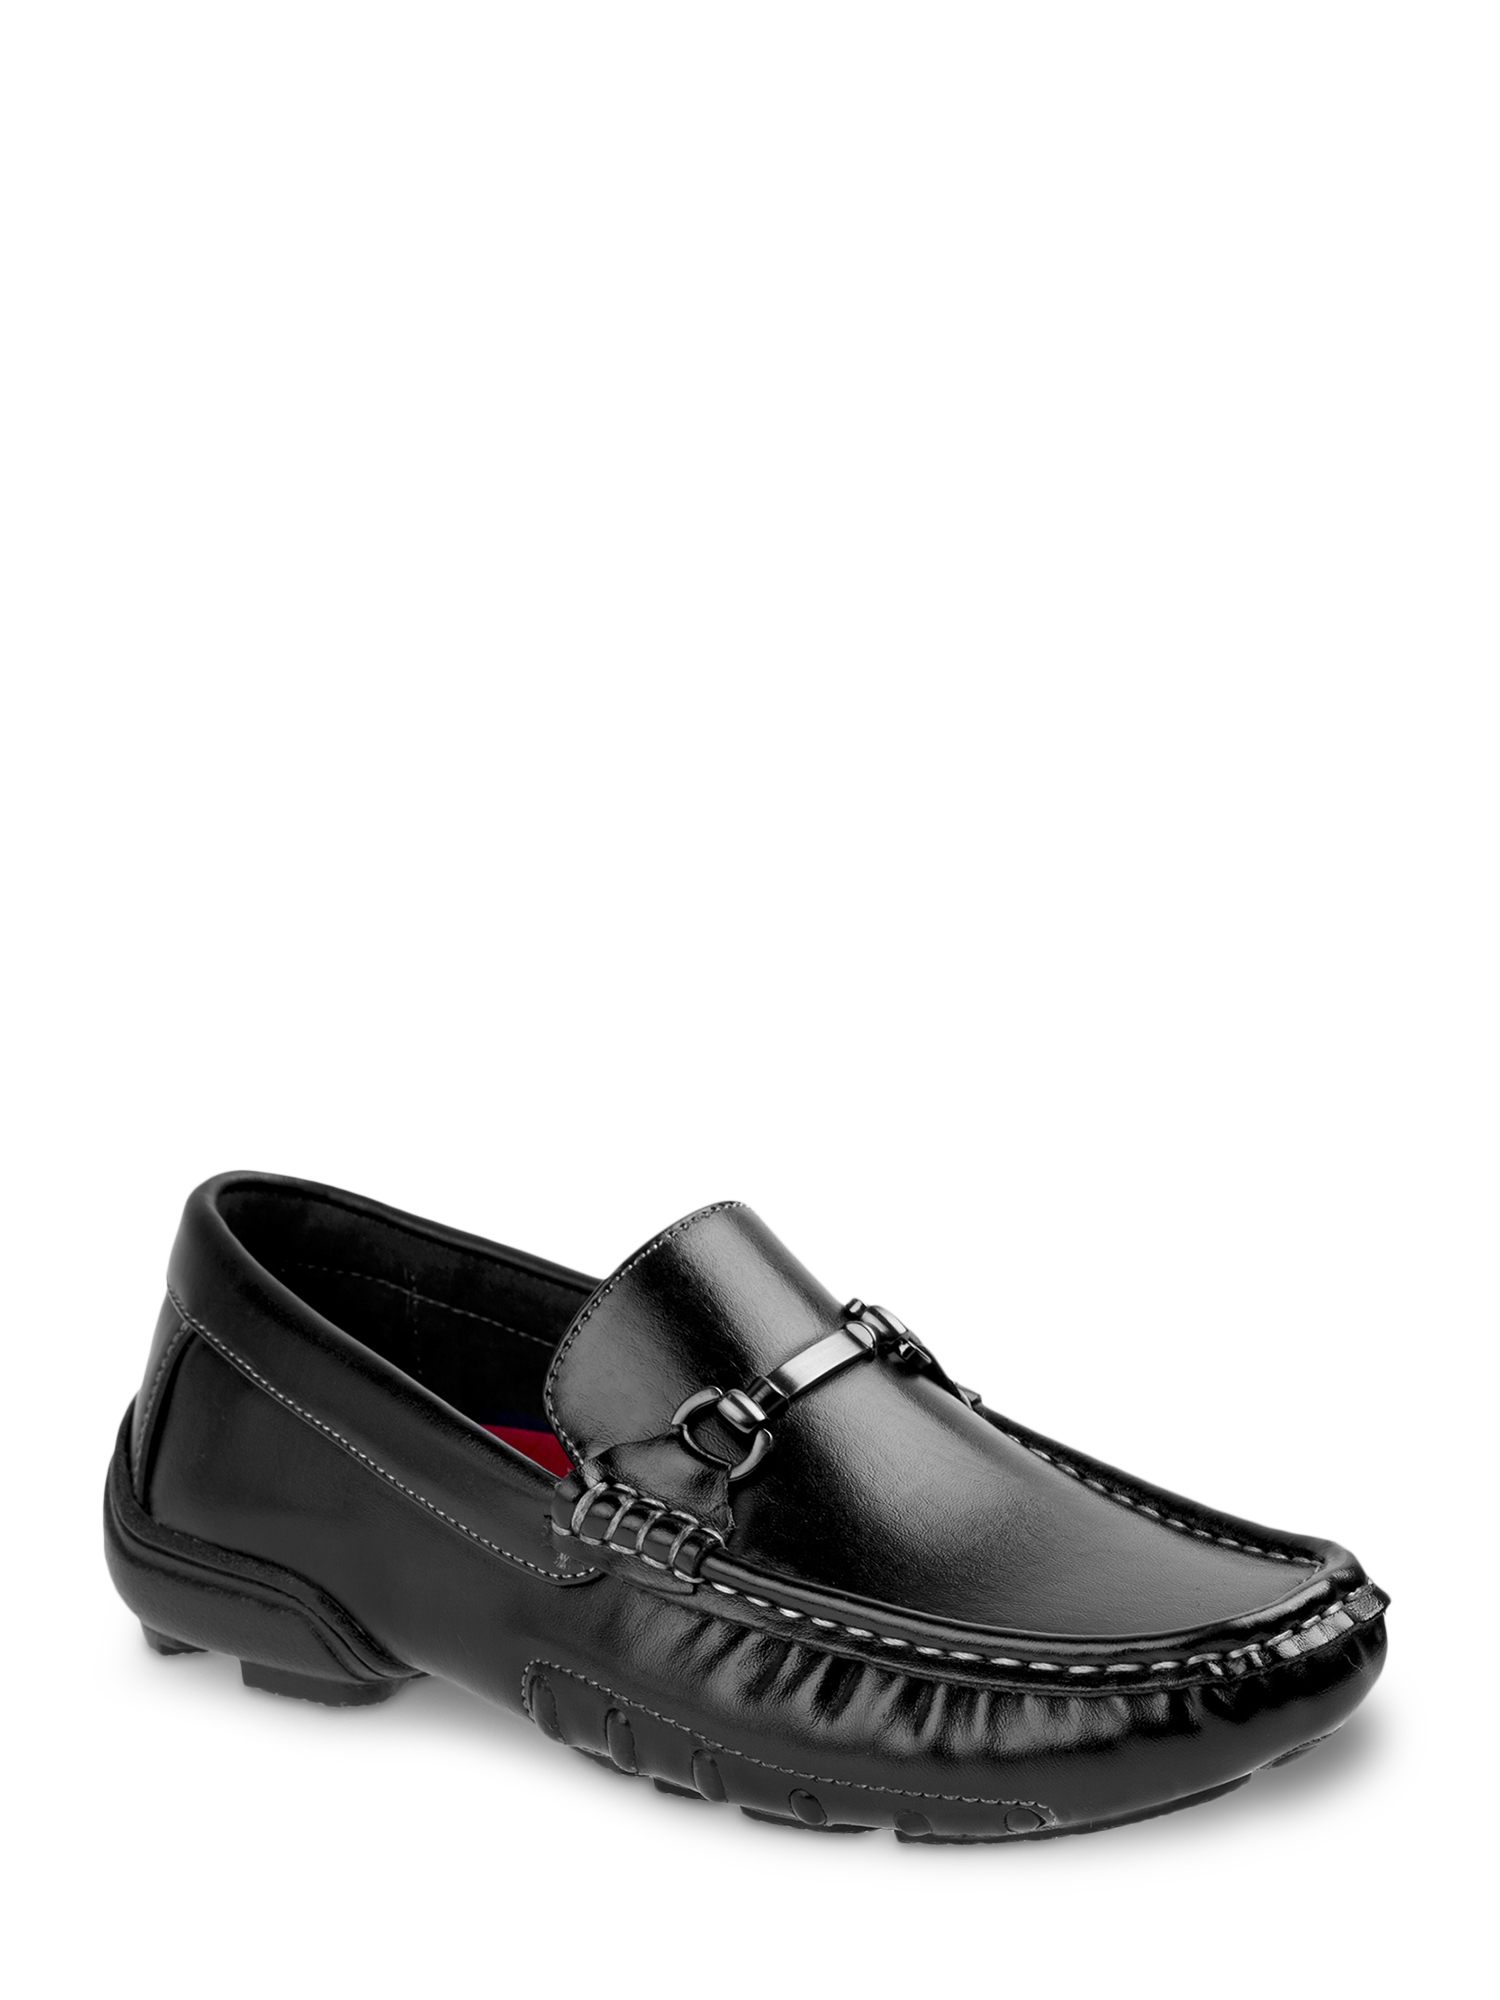 Joseph Allen Boys' Dress Shoes - image 1 of 7